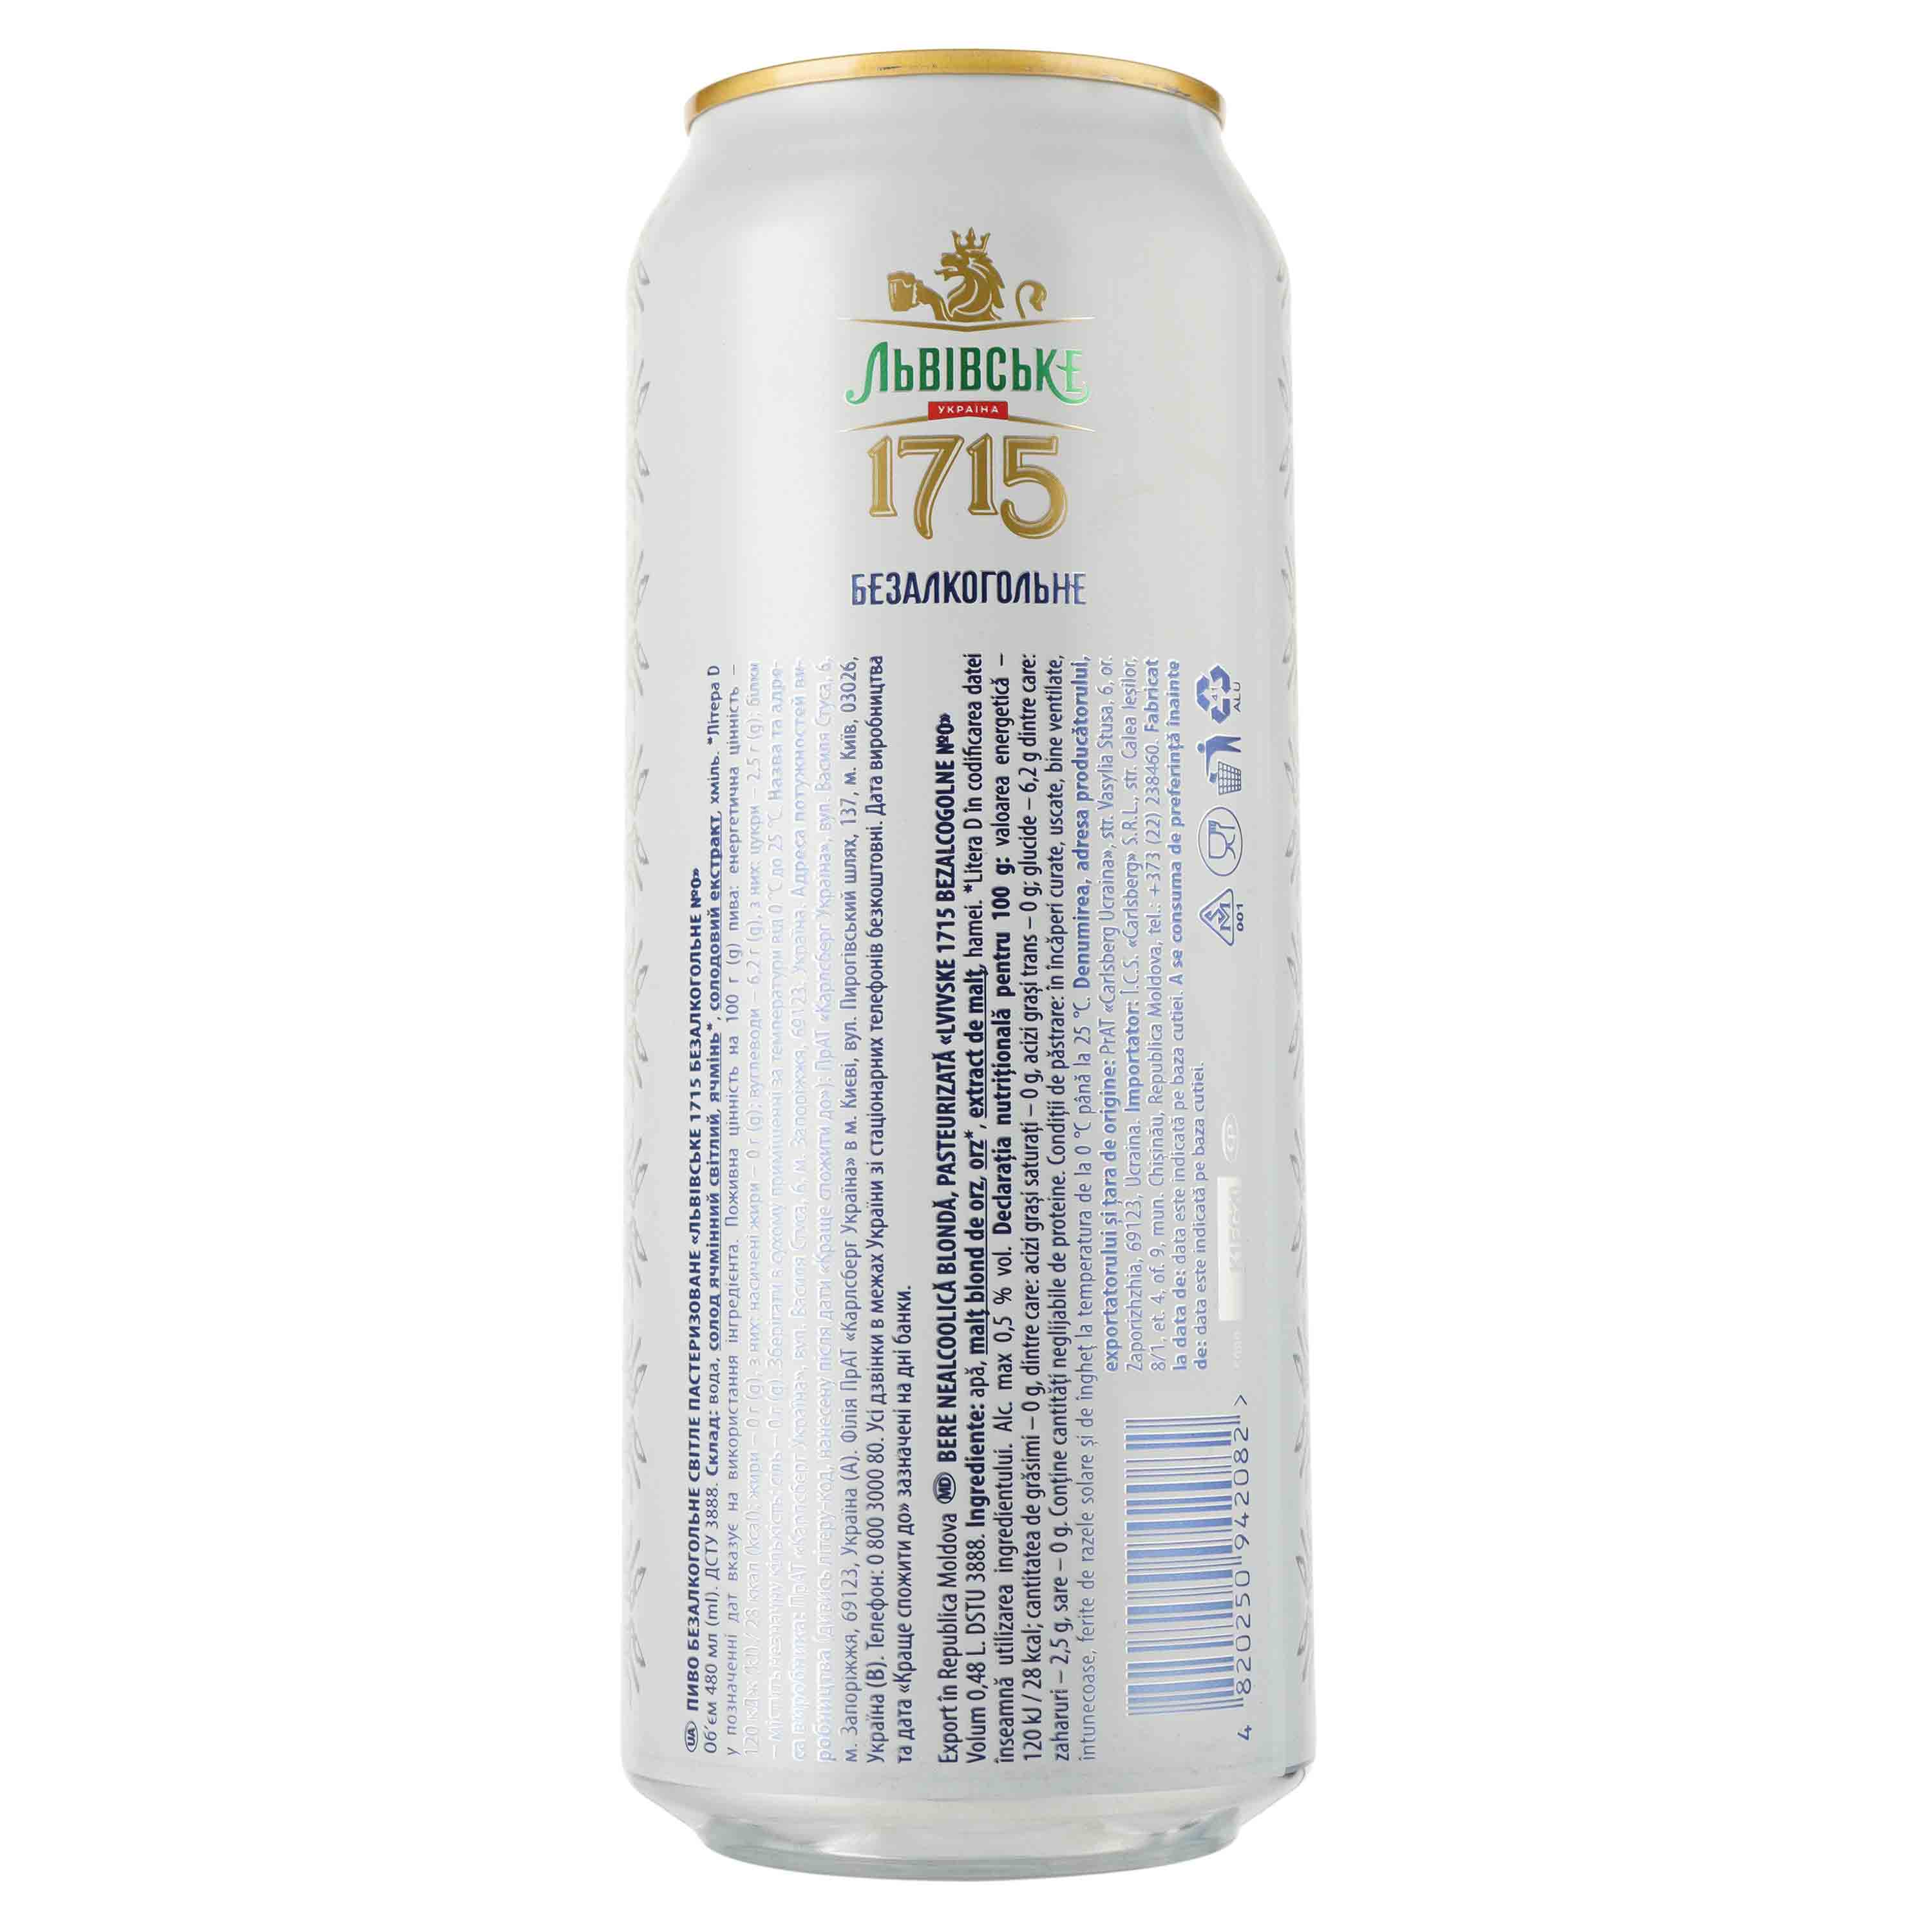 Пиво безалкогольное Львівське 1715, светлое, фильтрованное, 0,5%, ж/б, 0,48 л (909341) - фото 2